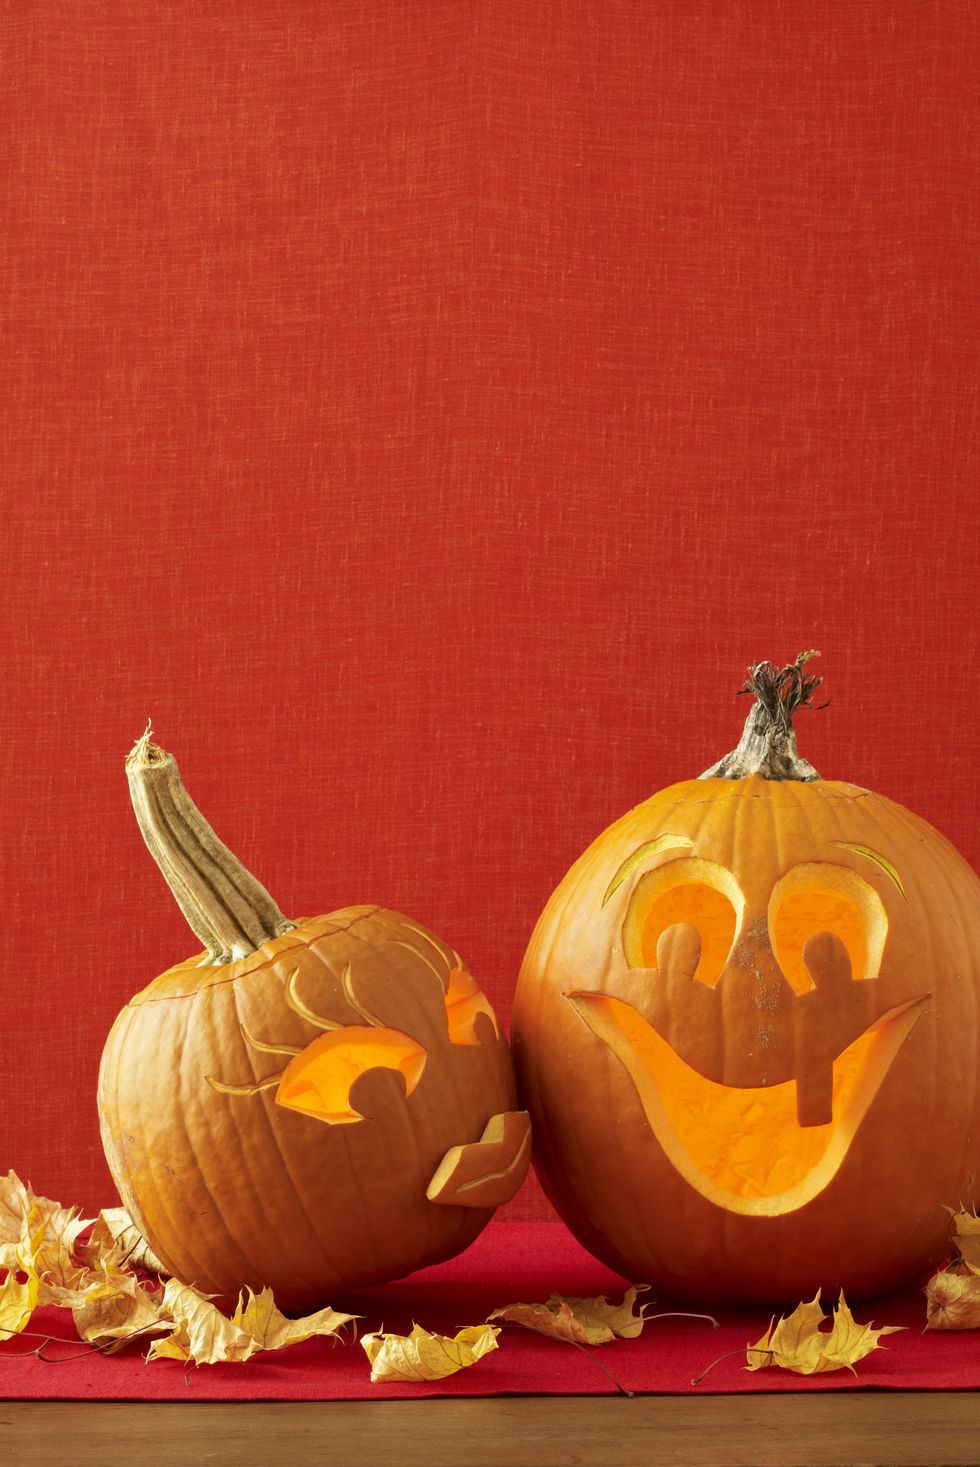 pumpkin carving ideas a smooch for you pumpkin